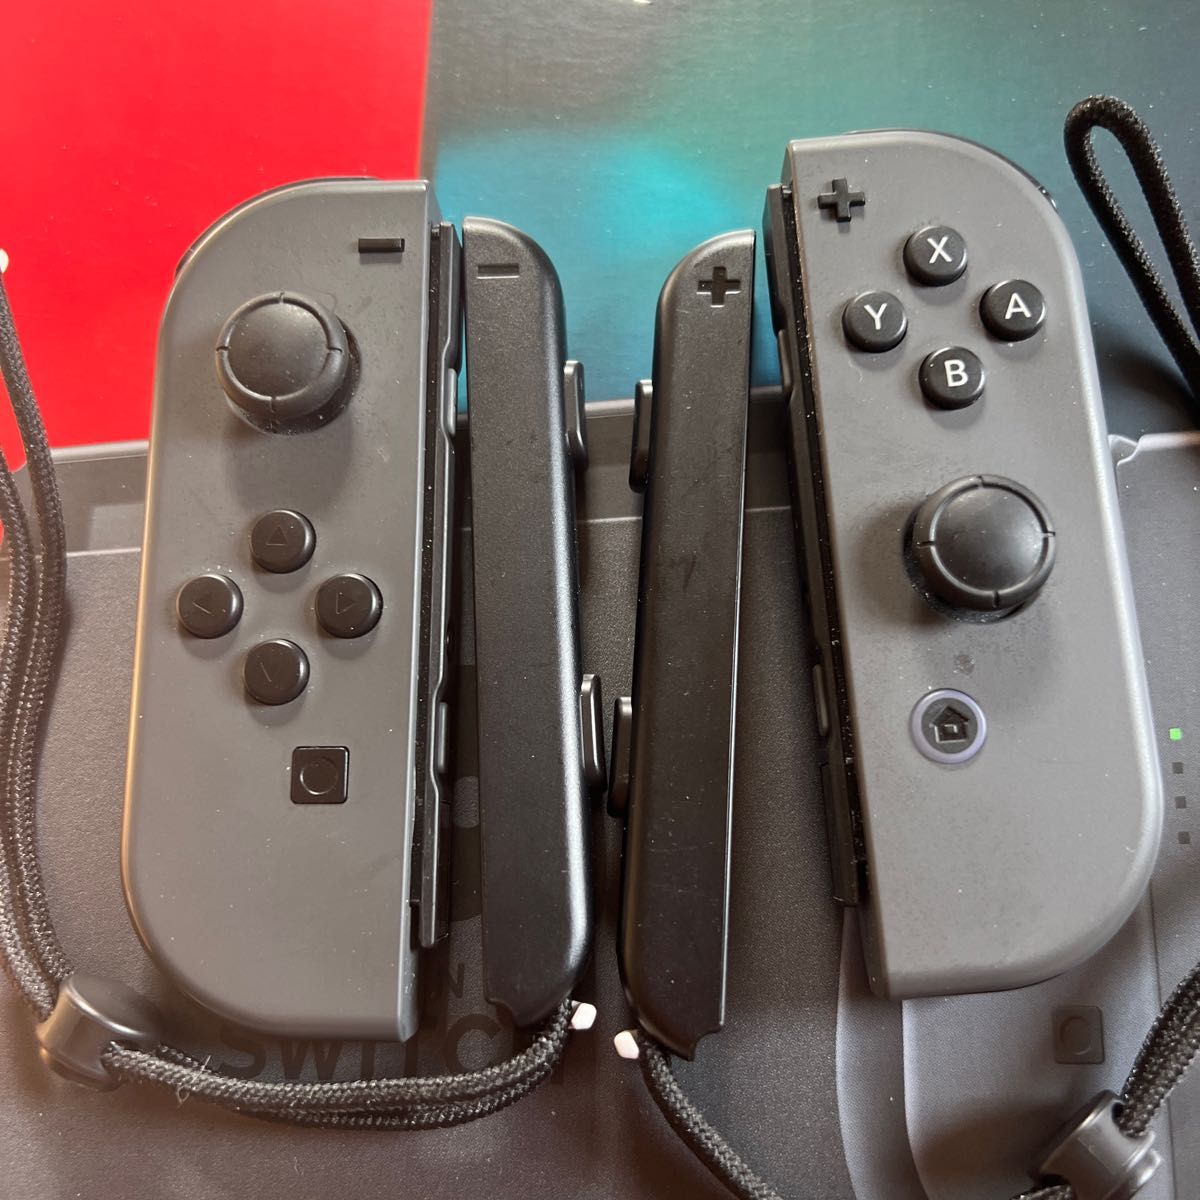 新型 ニンテンドースイッチ Nintendo Switch 任天堂 グレー 本体 一式 セット 付属品全て 完品 美品